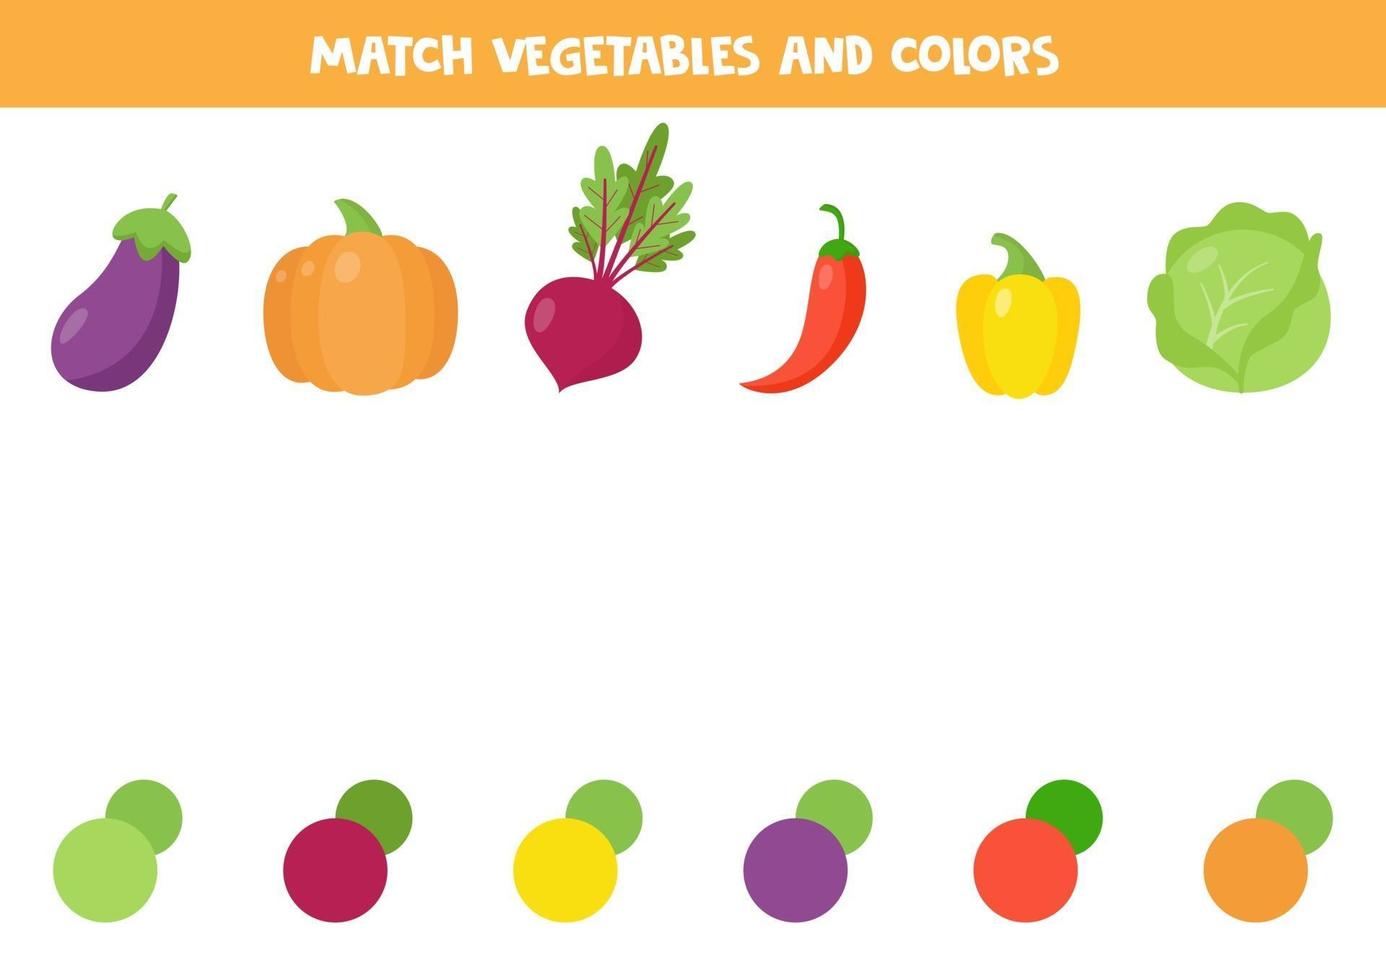 coincidir con la verdura y su color. lindo cartón de remolacha, pimiento, berenjena, calabaza, repollo. vector